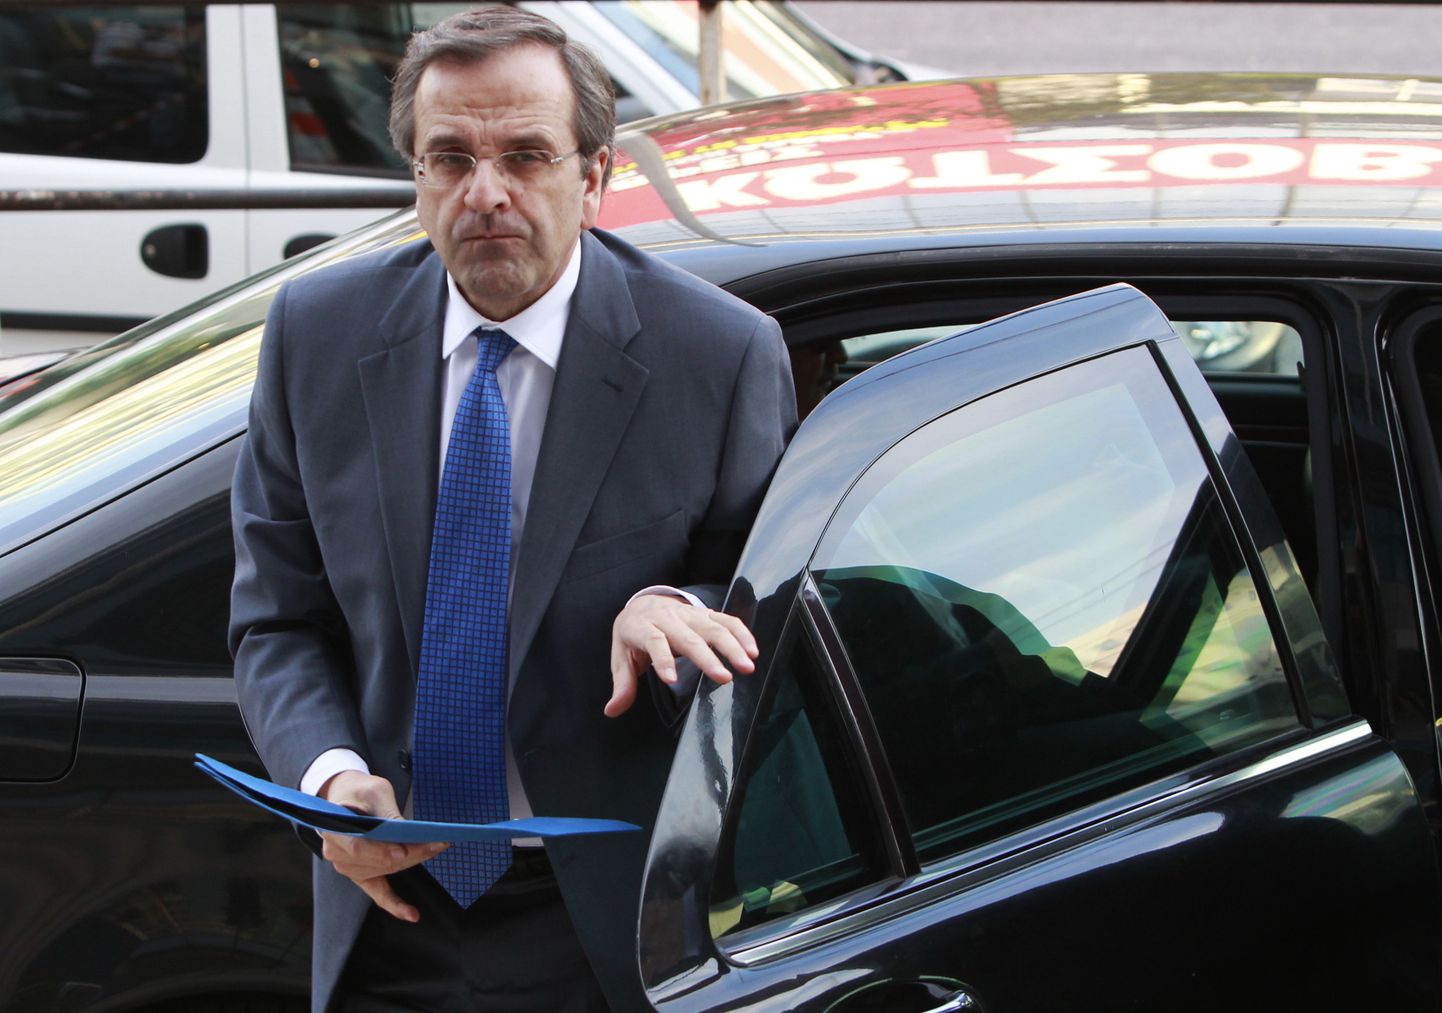 Kreeka konservatiivide liider Antonis Samaras.